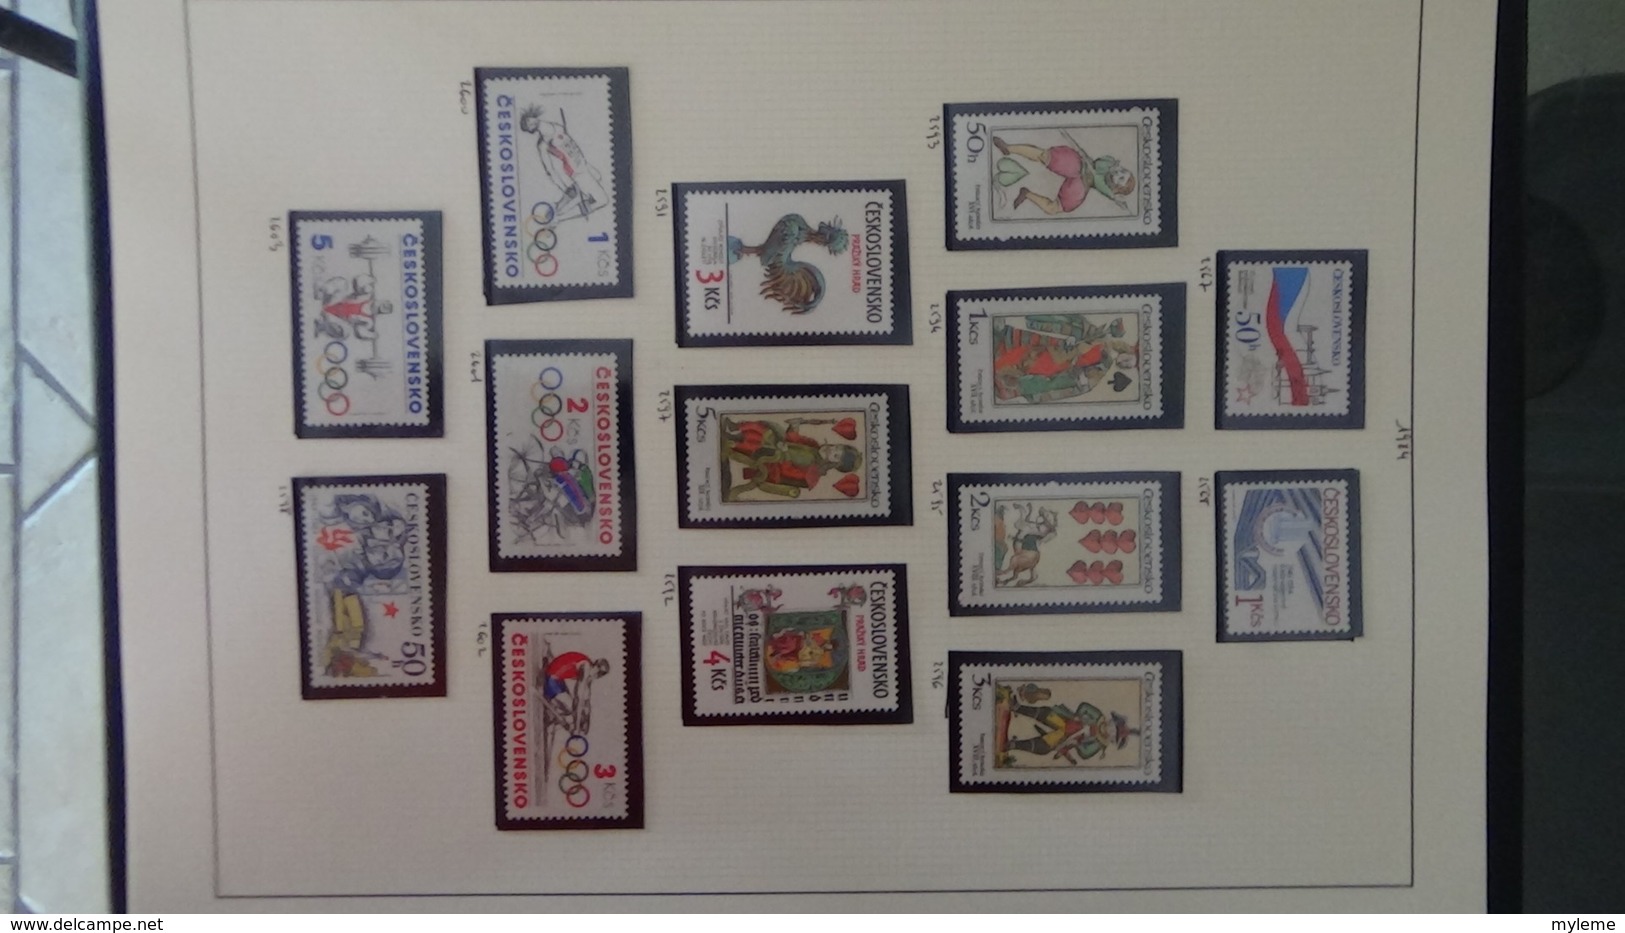 Collection de timbres Tchecoslovaquie ** N° 1615 à 2659 manque 7 timbres . Voir commentaires